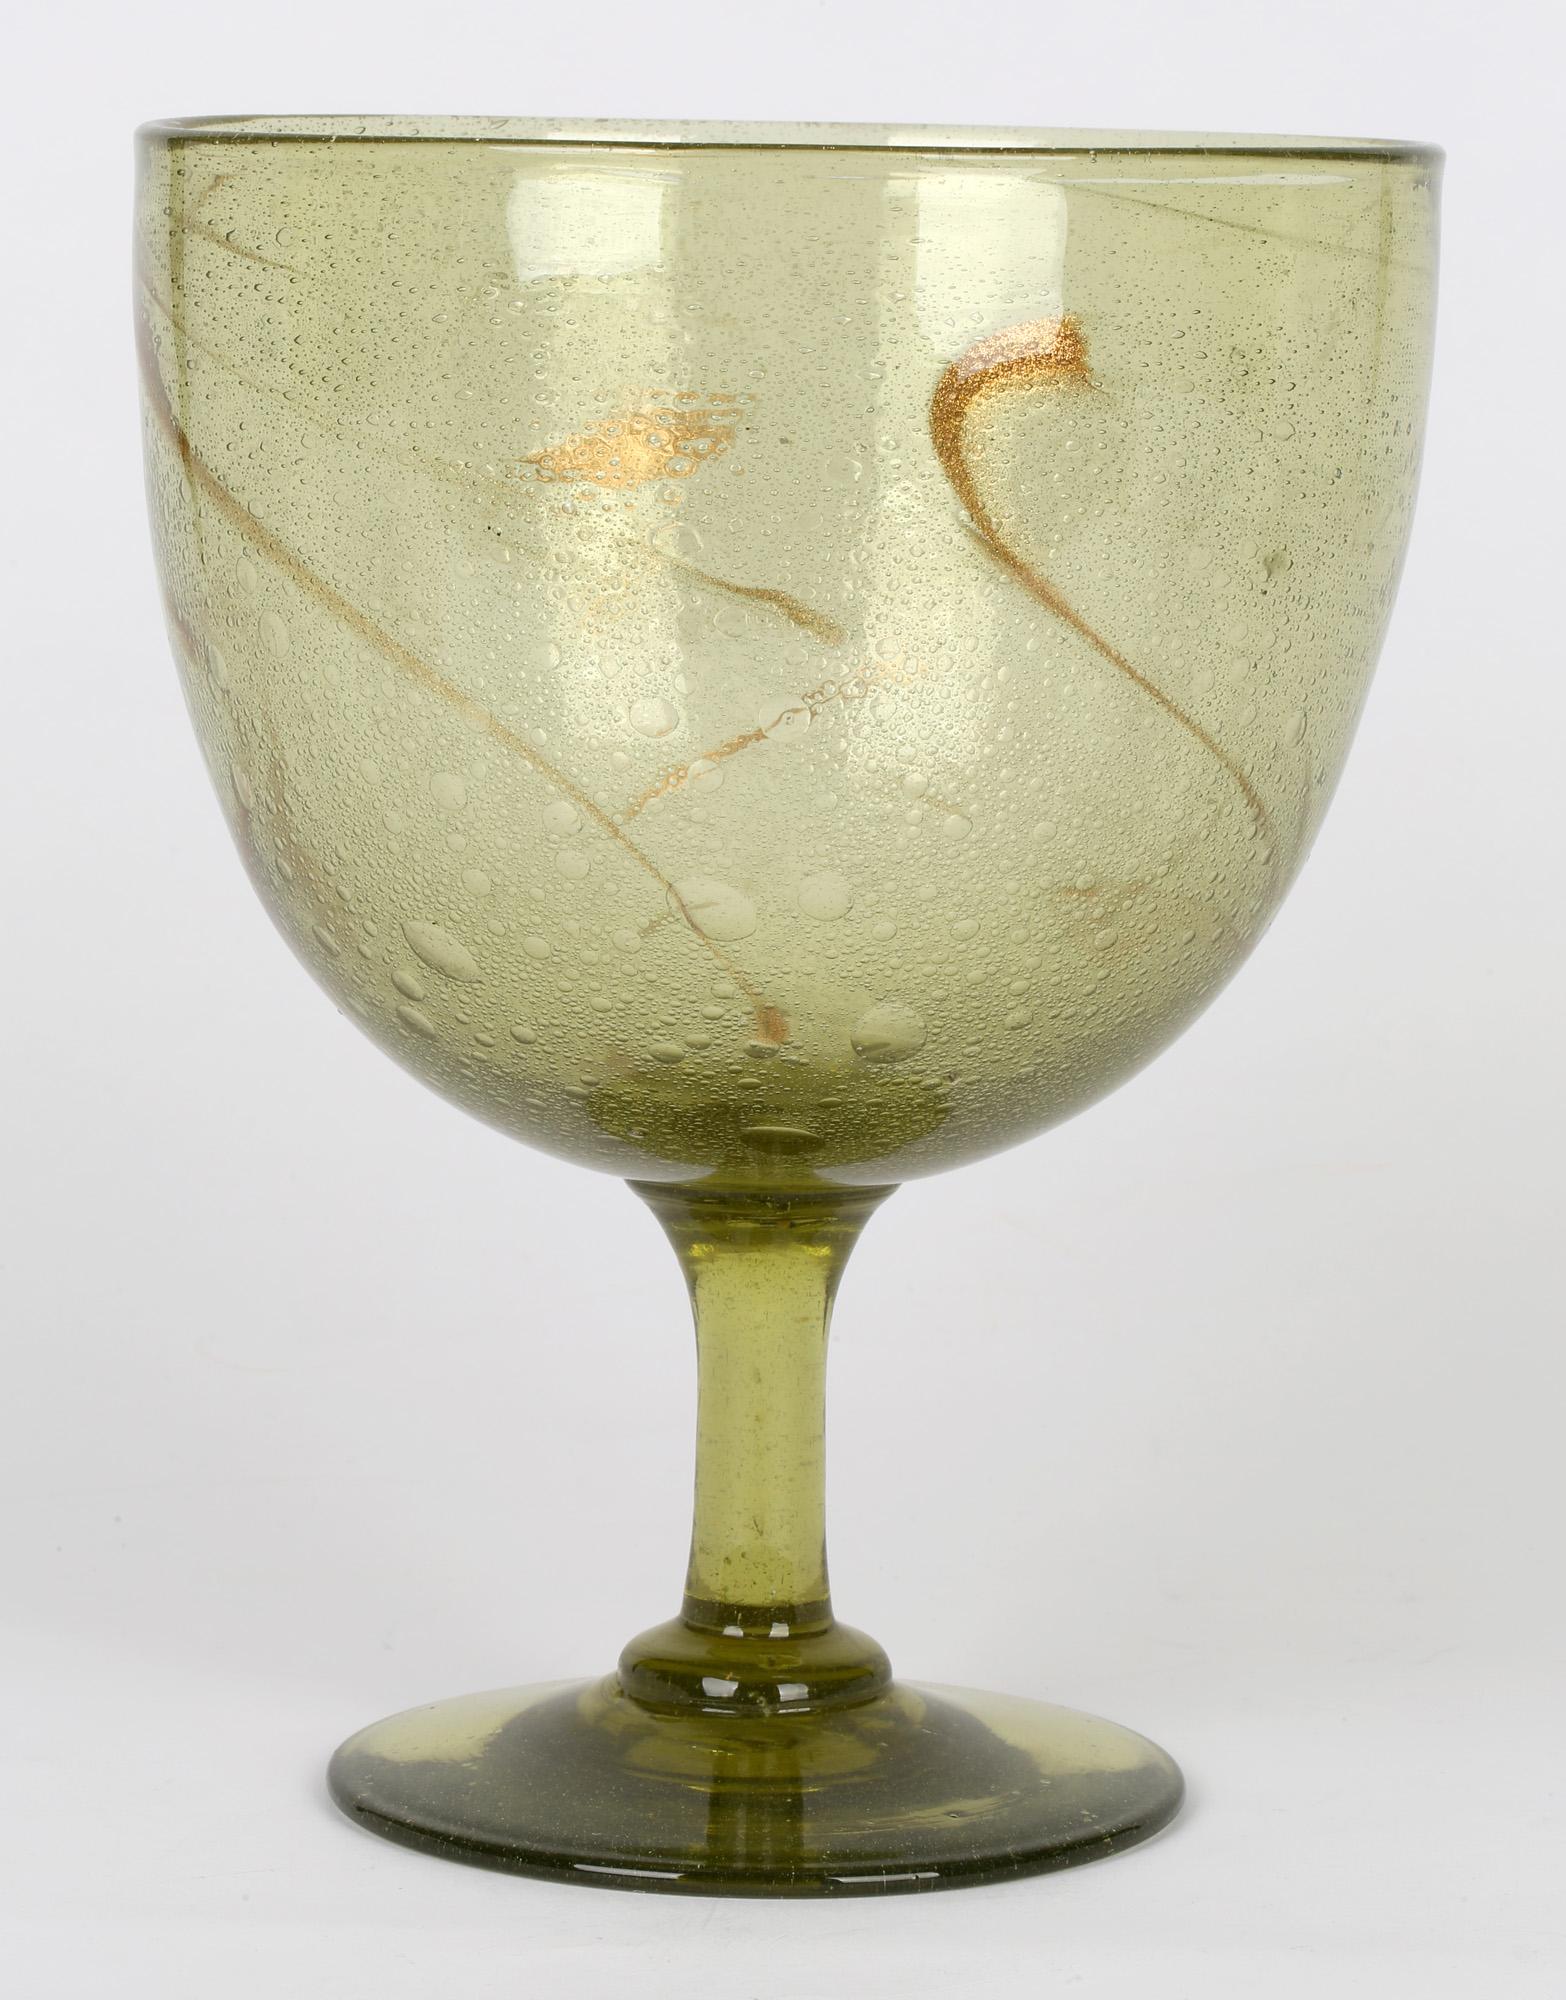 Christopher Dresser for James Coupar Clutha Glass Footed Goblet Shaped Vase 2